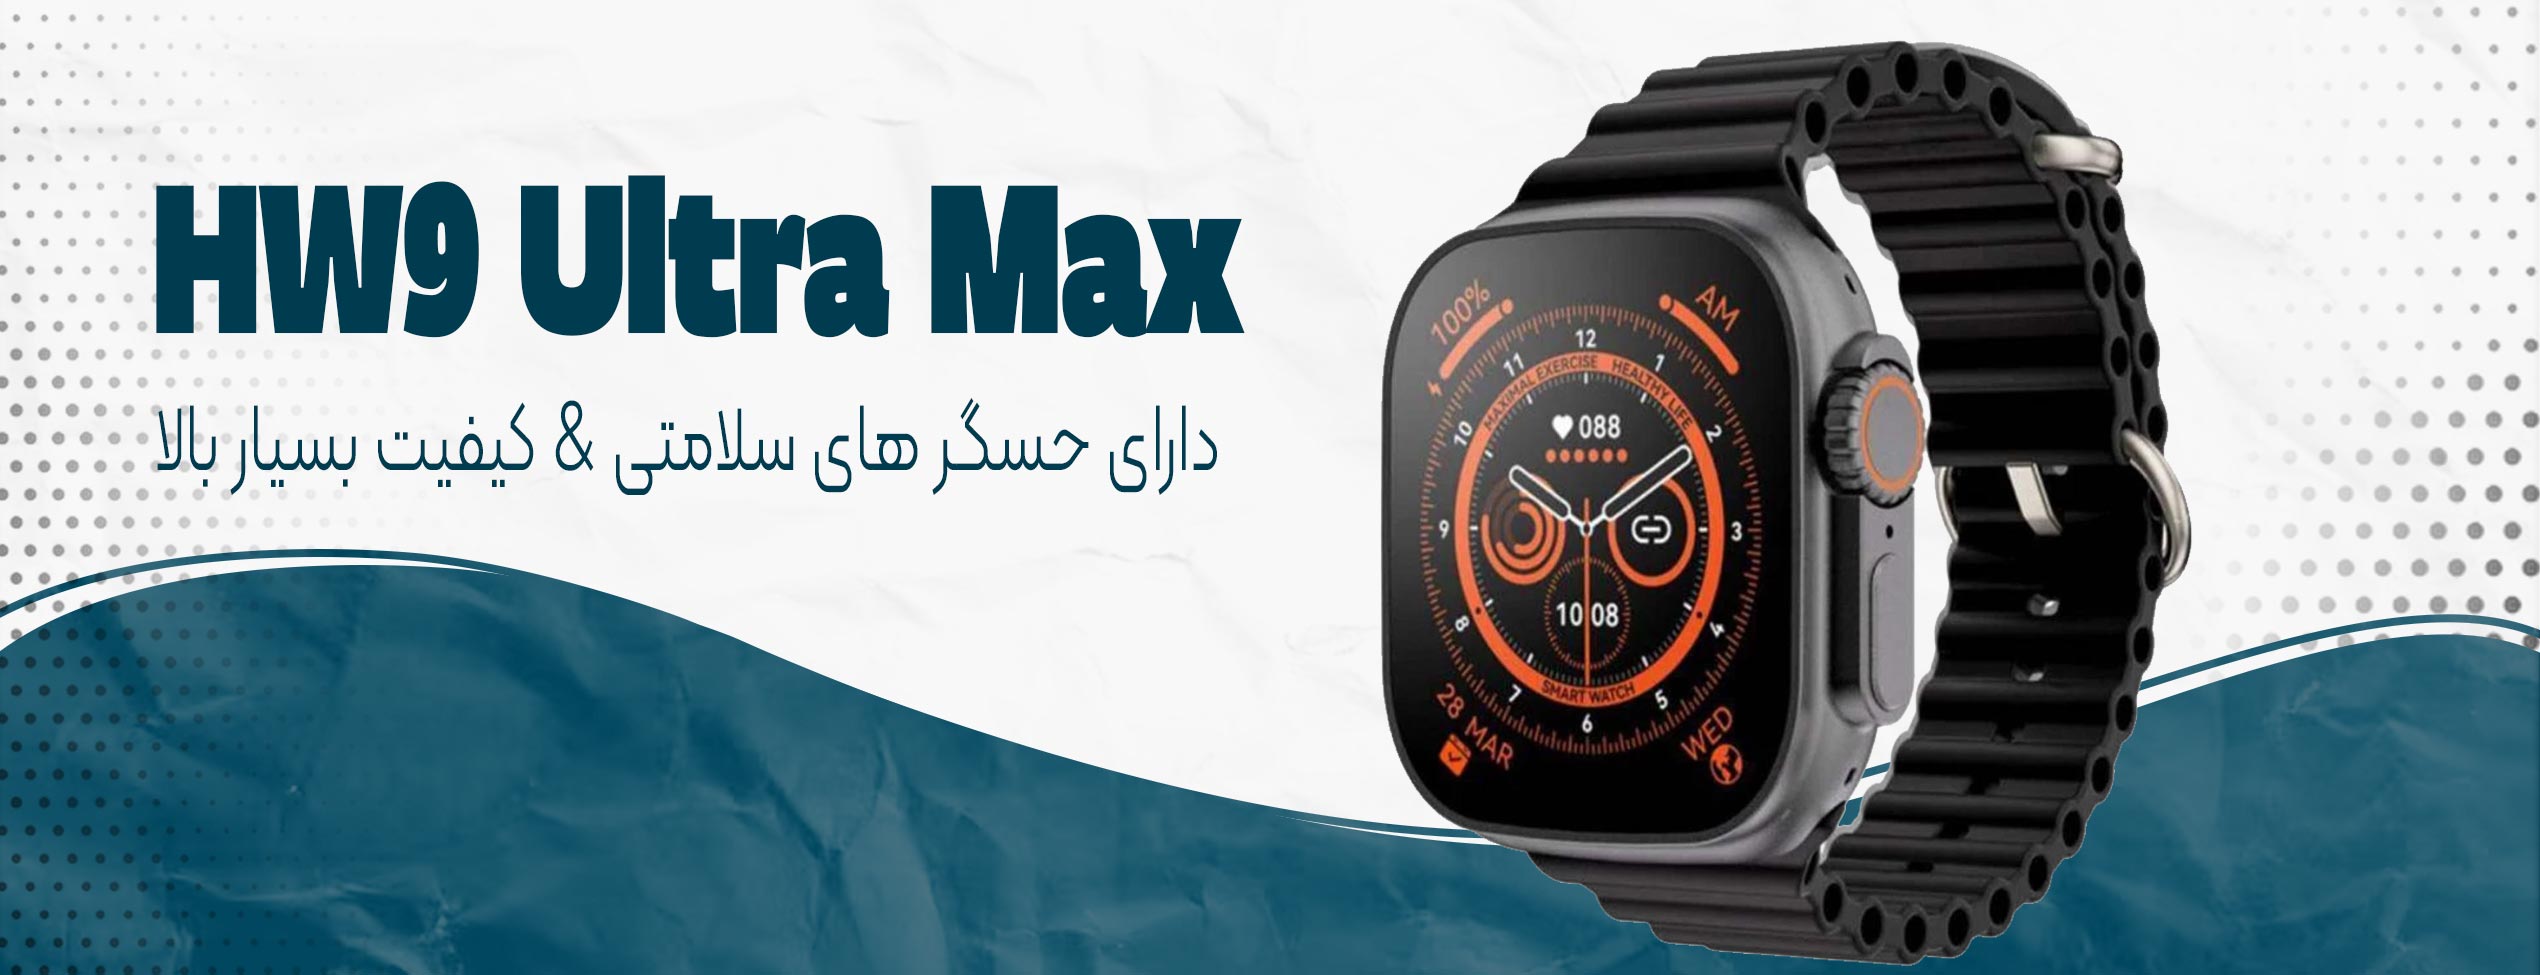 ساعت هوشمند HW9 Ultra Max